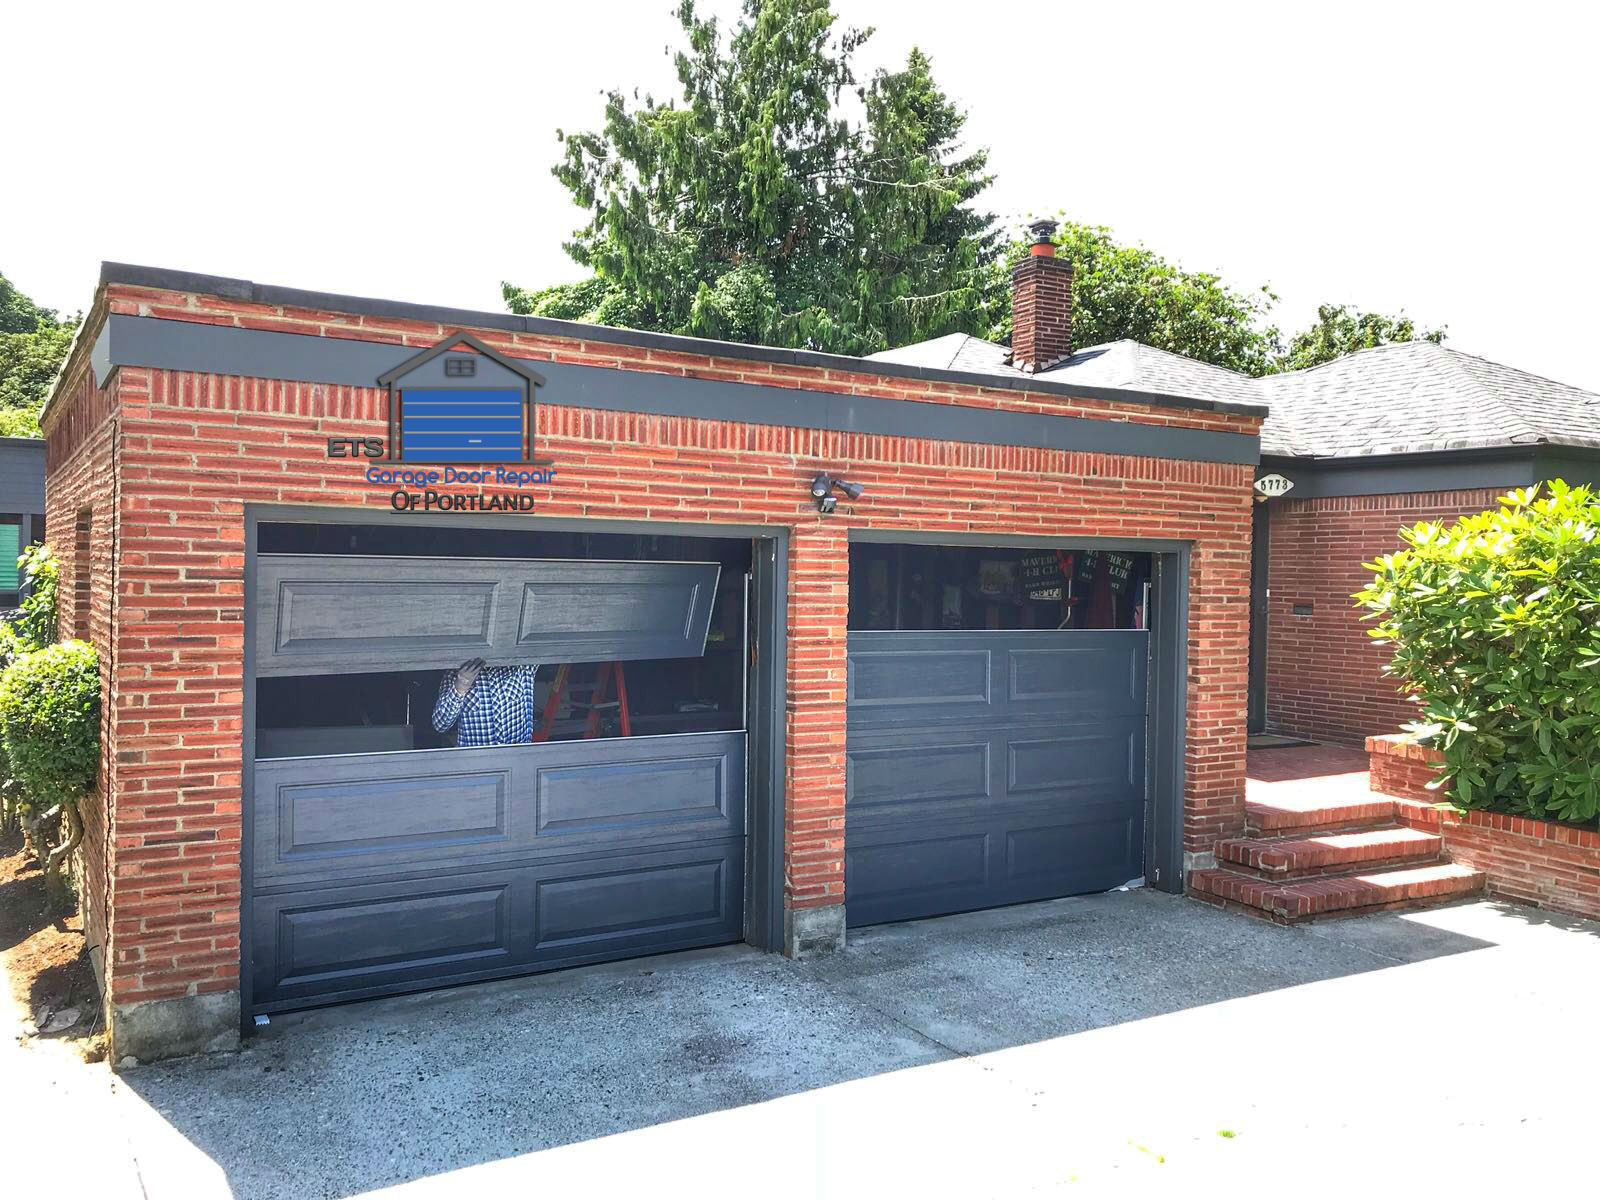 ETS Garage Door Repair Of Tigard - Garage Door Repair & Installation Services10